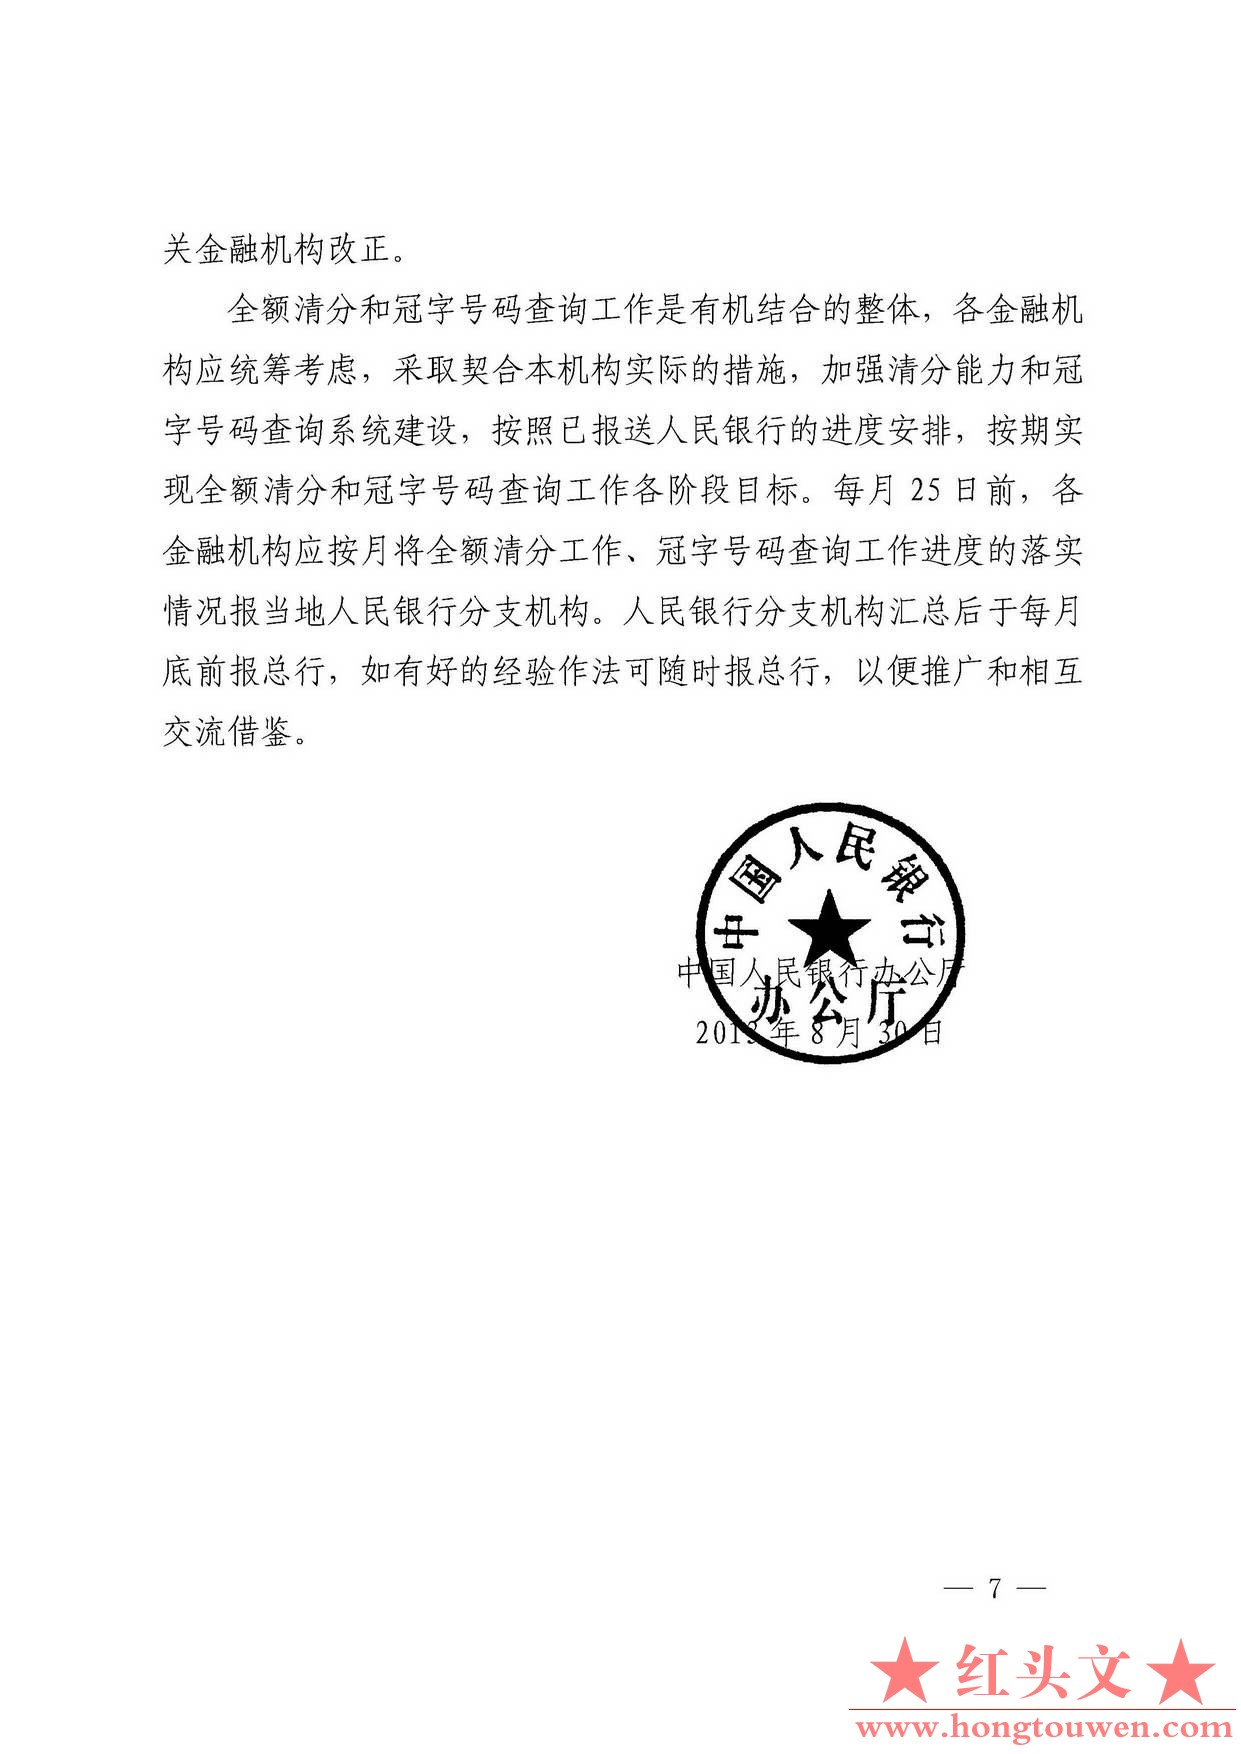 银发[2013]197号-中国人民银行办公厅关于进一步明确全额清分和冠字号码查询工作有关事.jpg